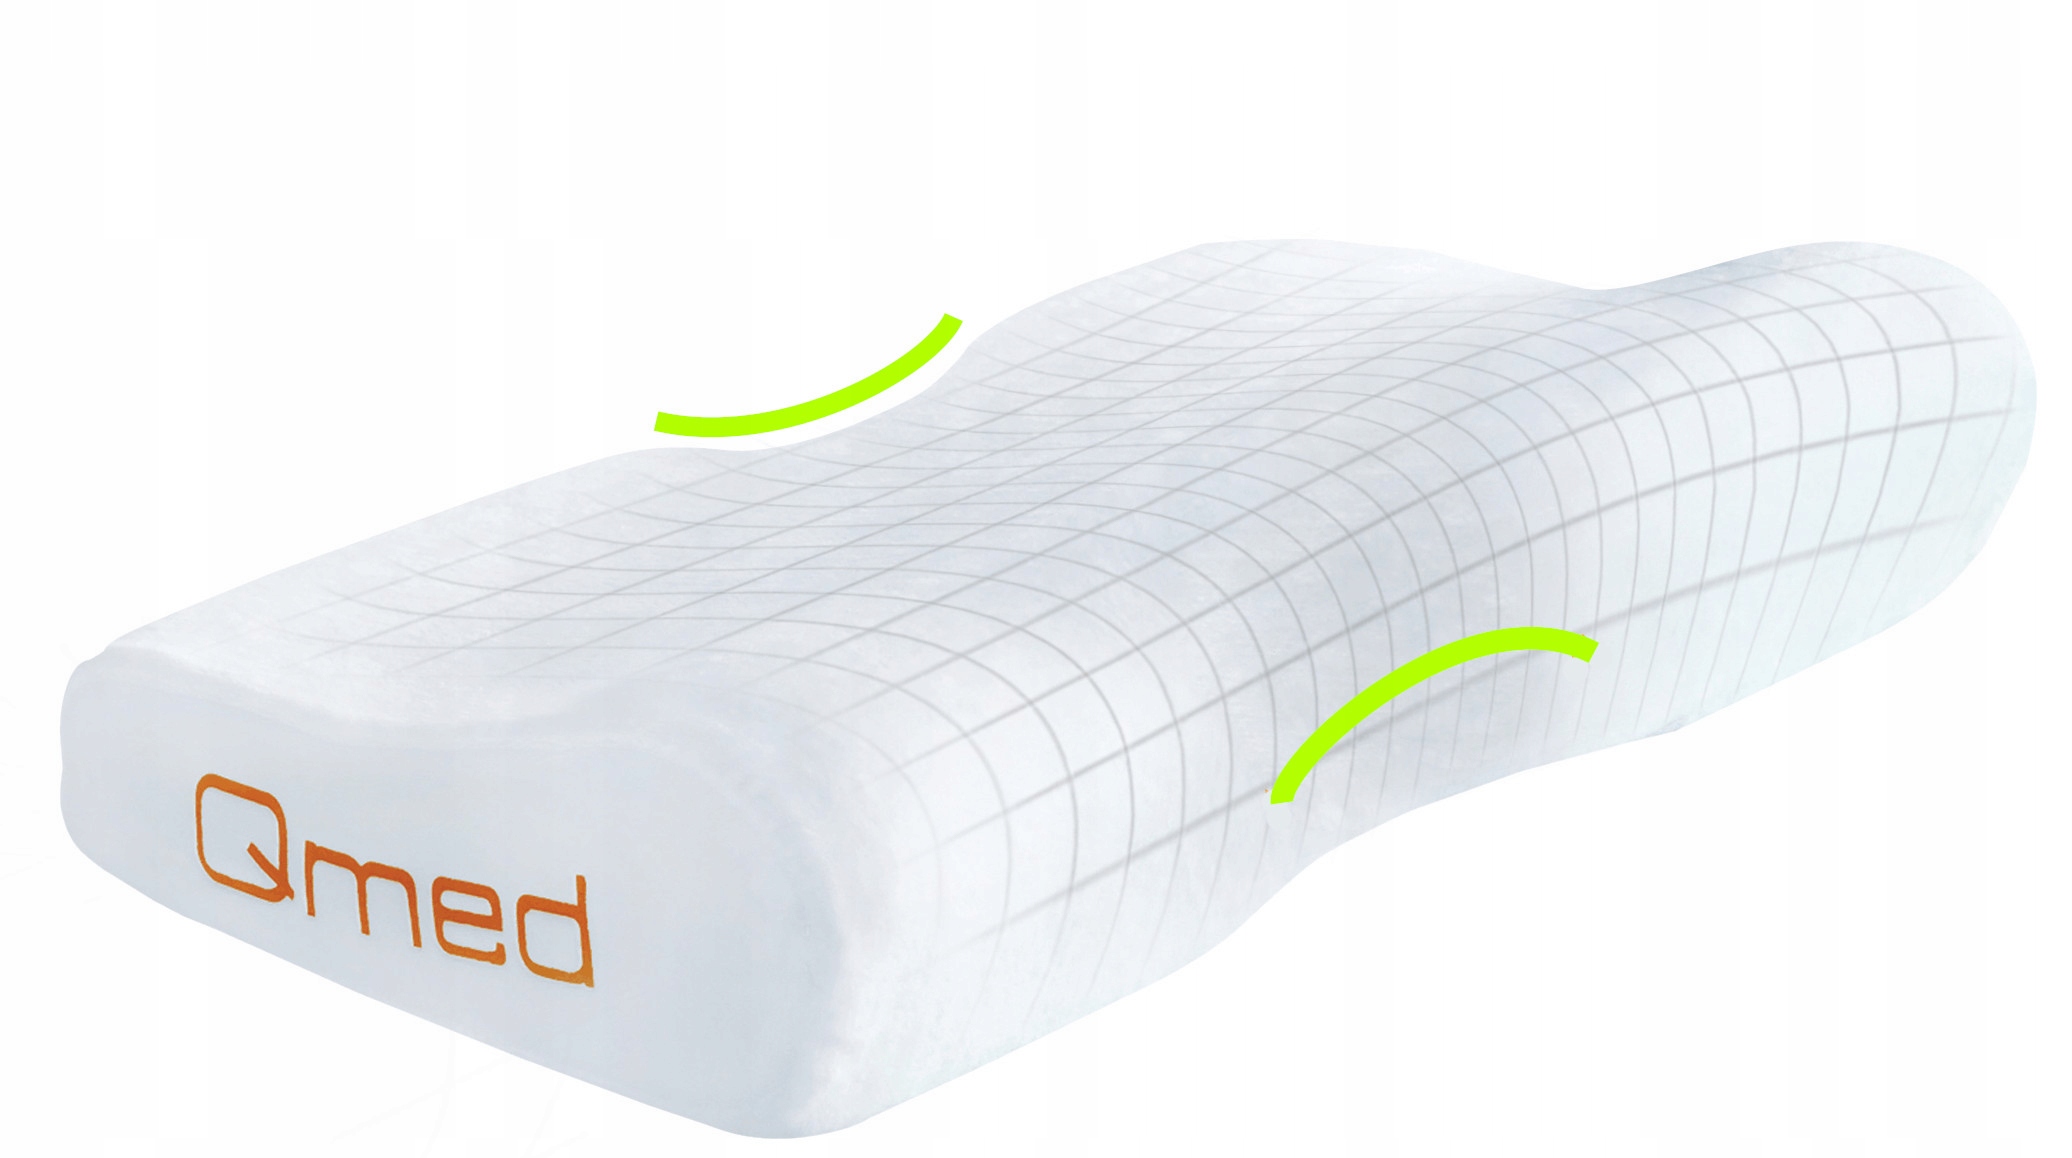 Профільна ортопедична подушка для сну, Professional, PREMIUM, LARGE, 35x60, оригінальний стан упаковки